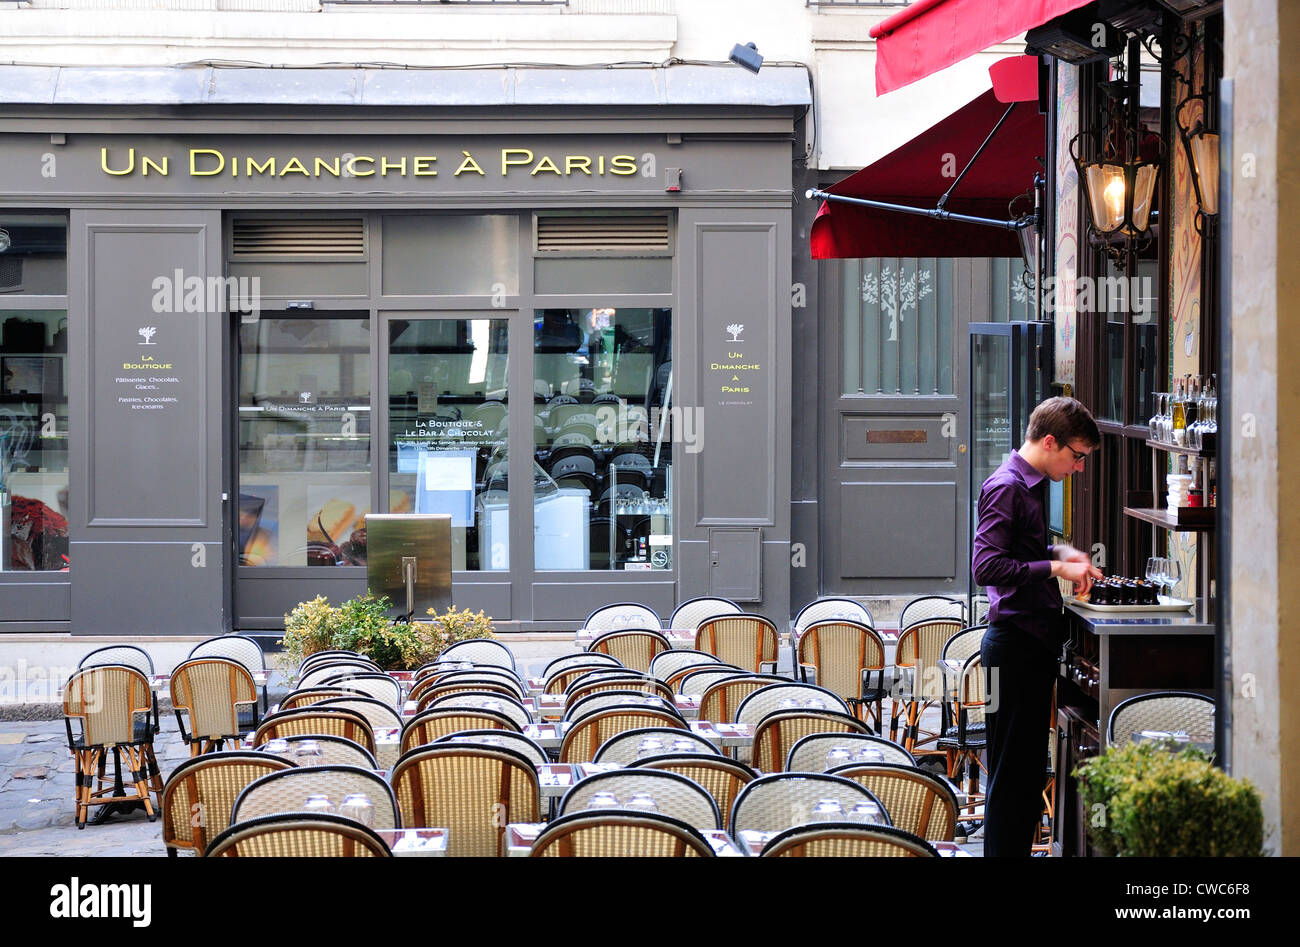 Paris, France. Cour du Commerce Sainte-Andre. 'Un Dimanche a Paris' cafe Stock Photo